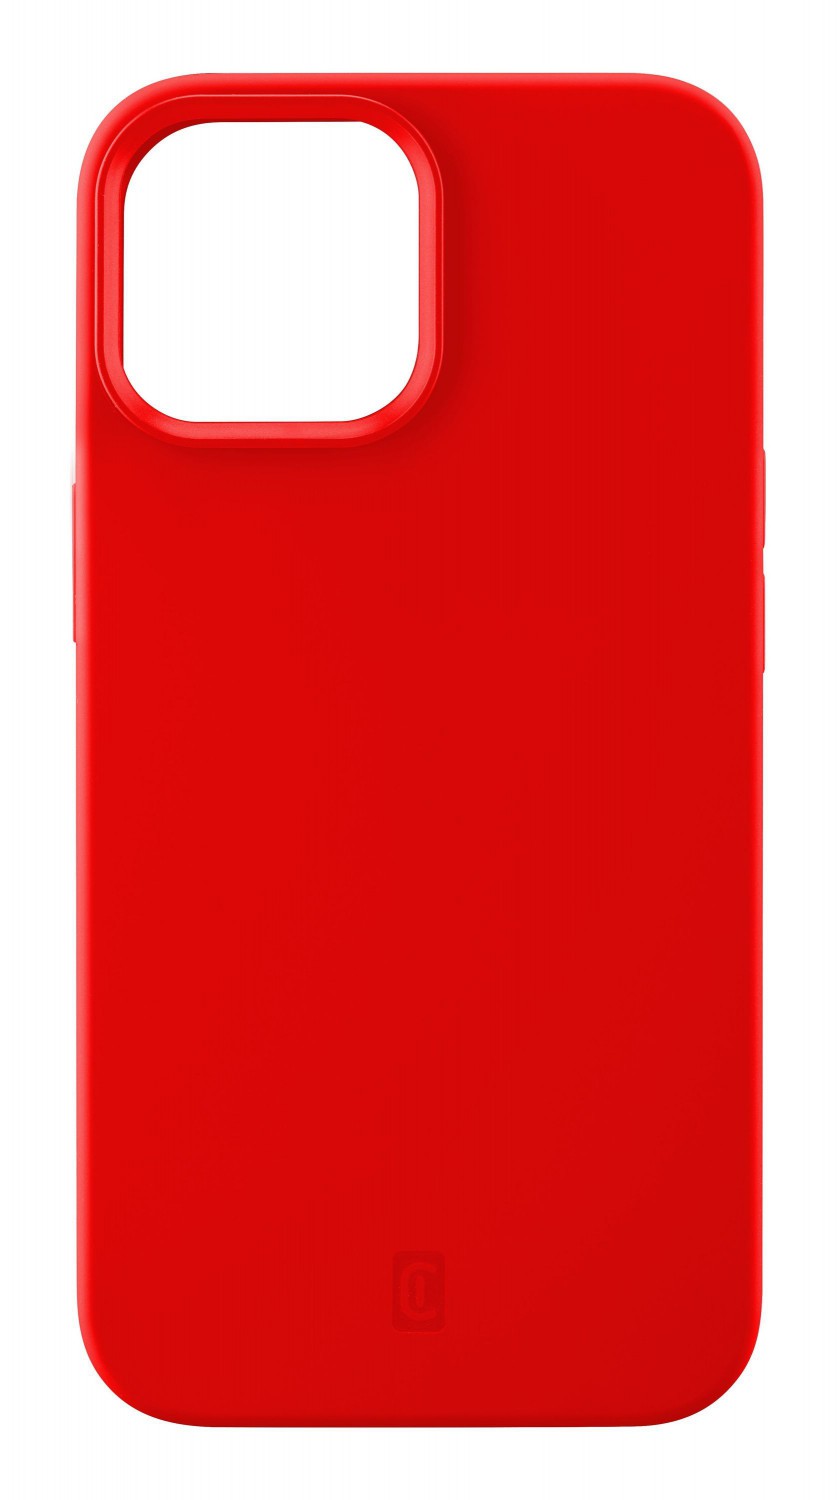 Silikonový kryt Cellularline Sensation pro Apple iPhone 13, červená